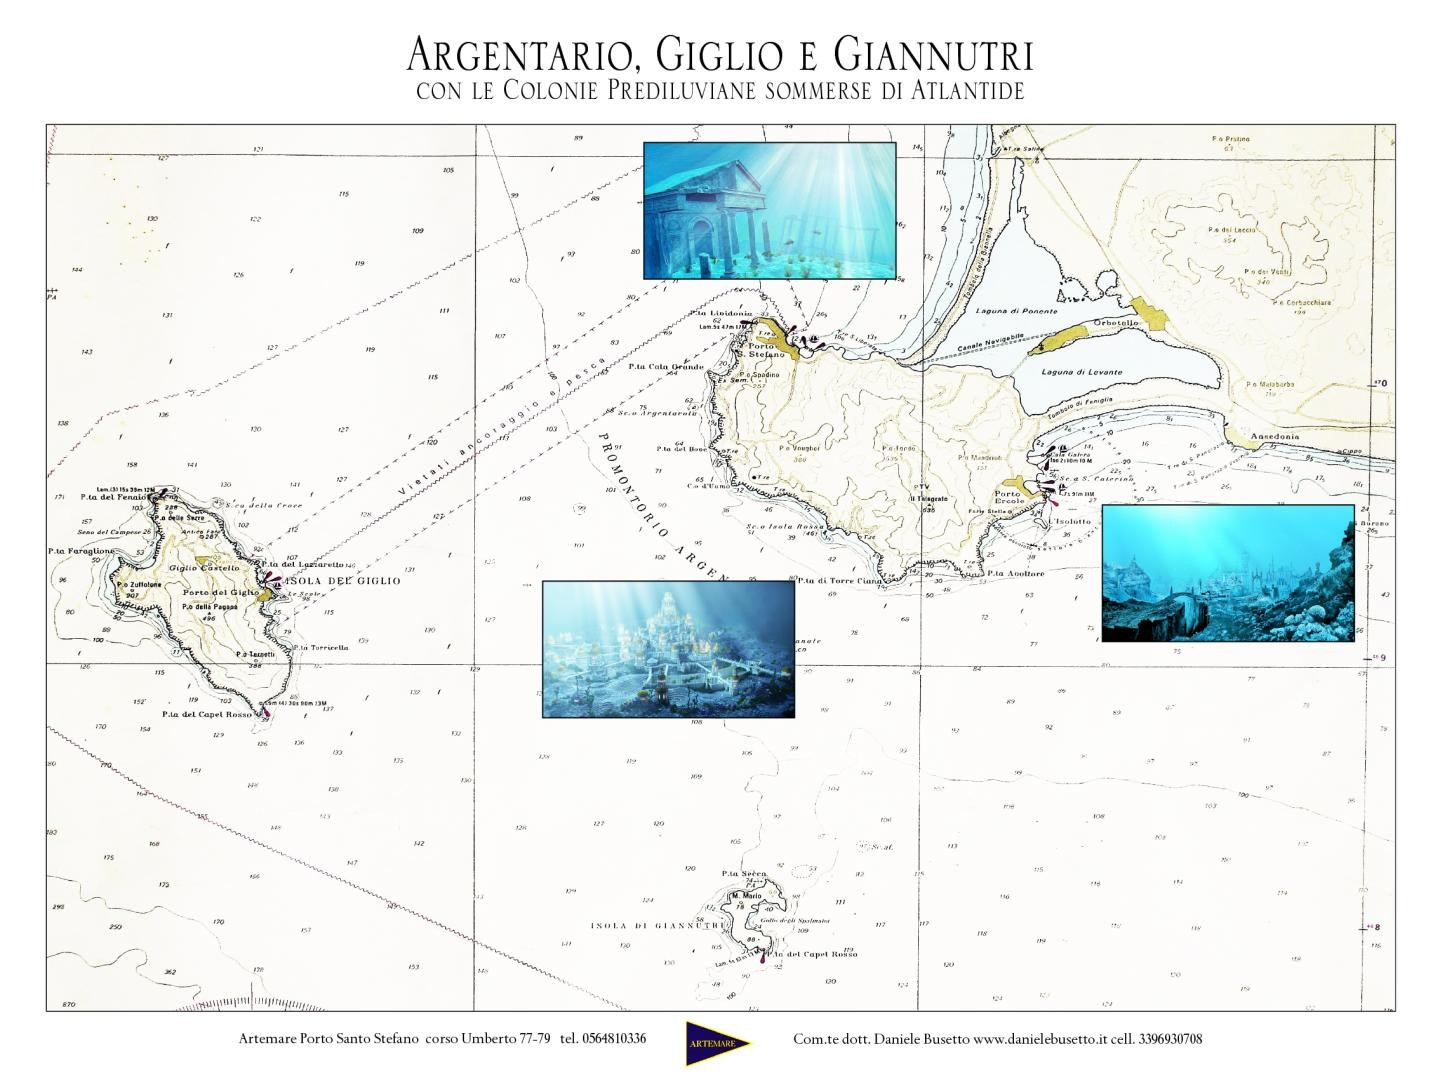 Carta dell'Argentario con le colonie sommerse di Tirrenide-Atlantide